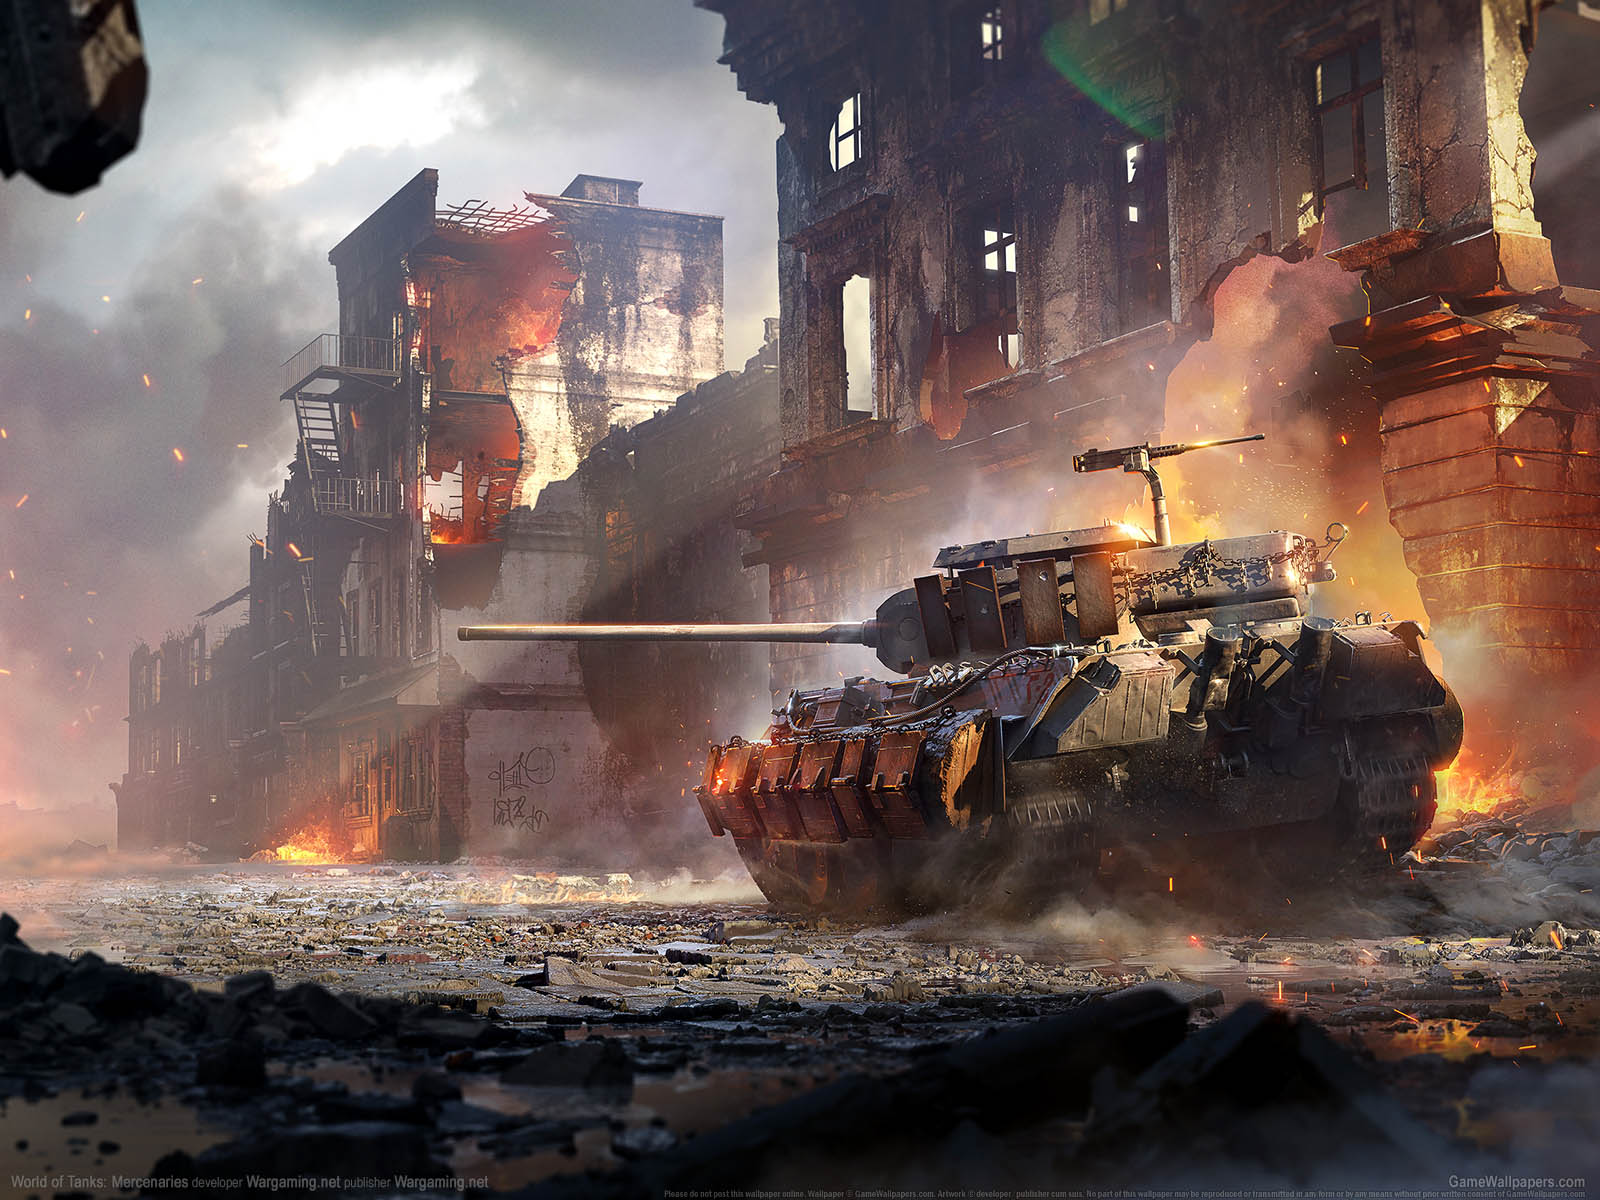 World of Tanks%3A Mercenaries fond d'cran 01 1600x1200